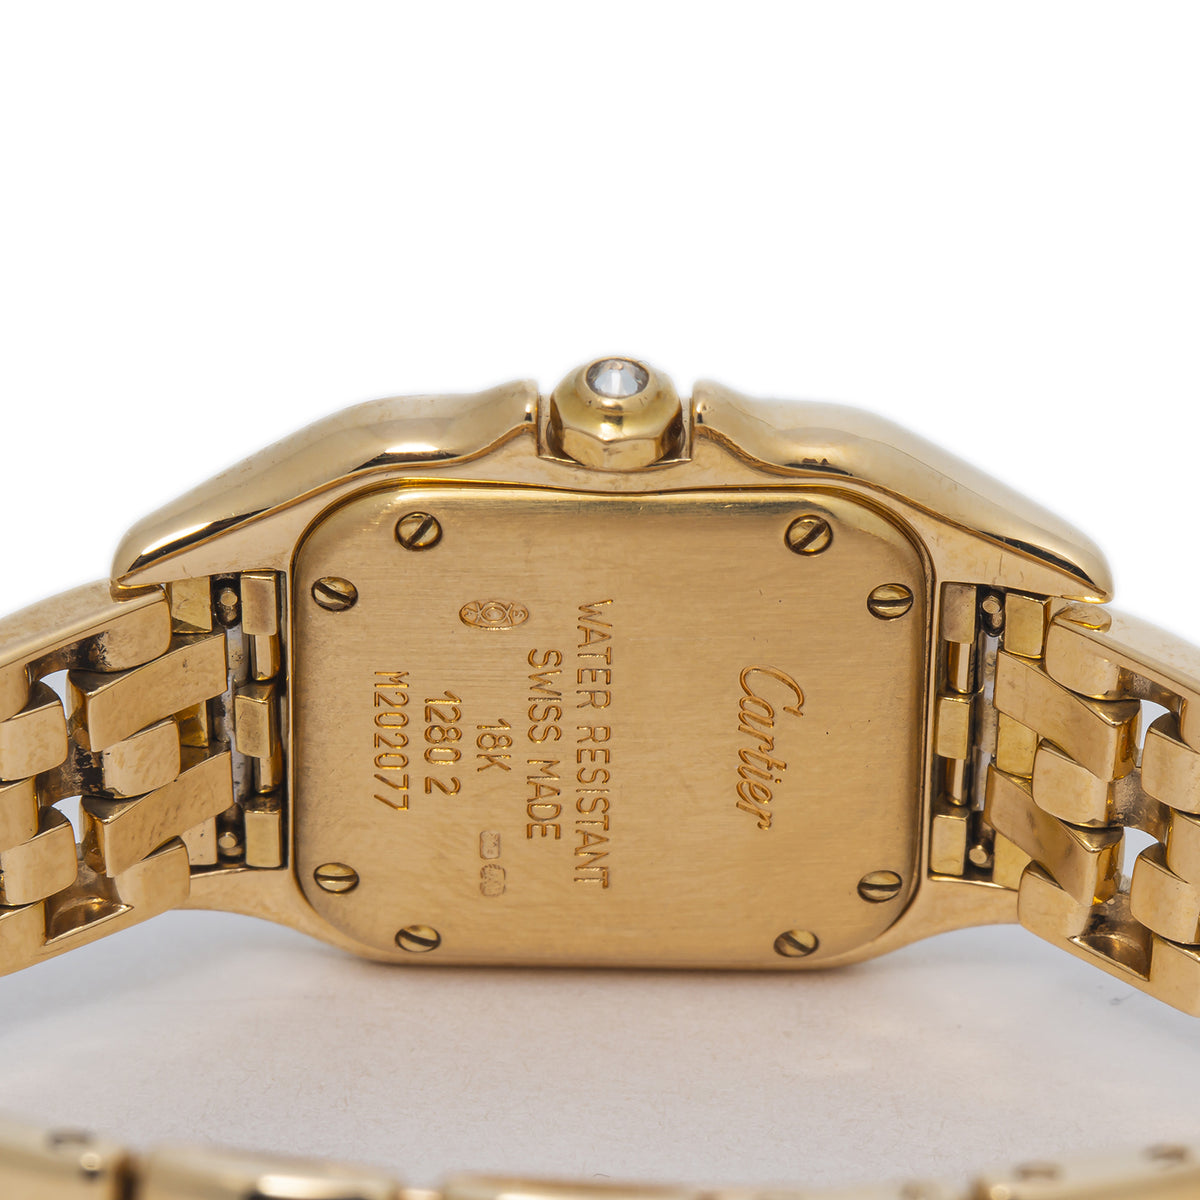 Cartier Panthere WF3072B9 1280 2 18k Gold Factory Diamonds Quartz Watch 22mm